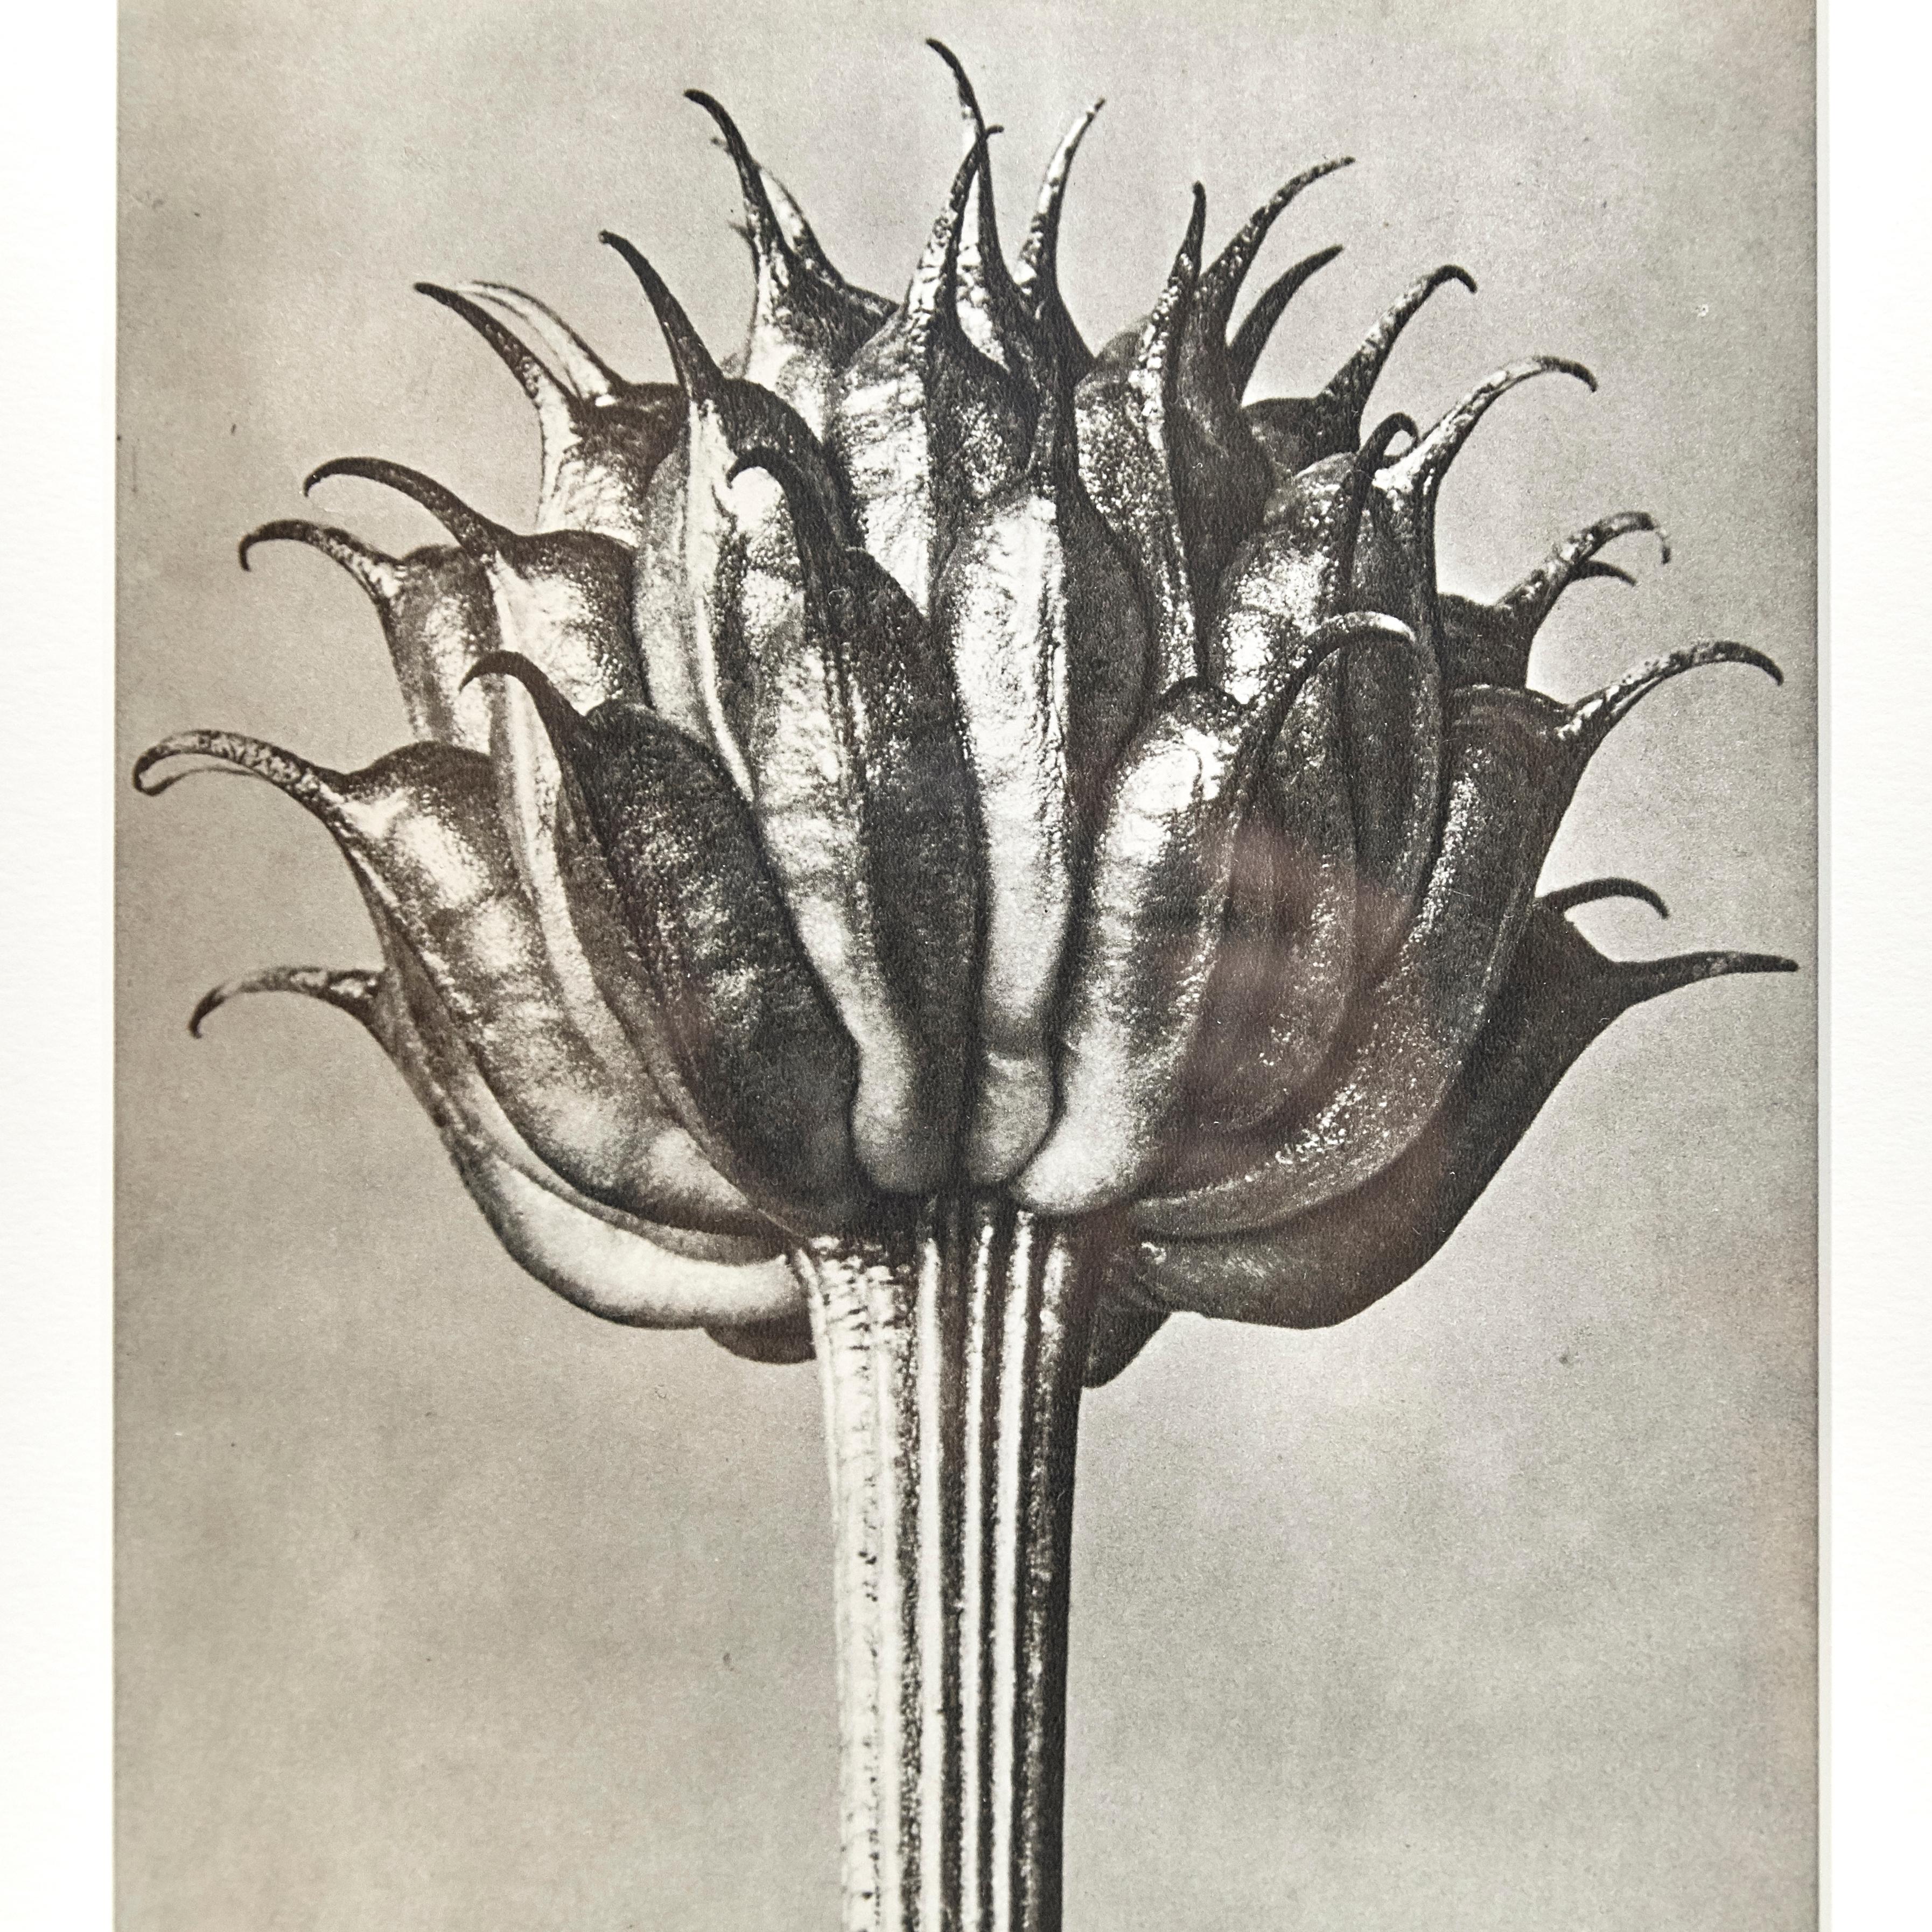 Karl Blossfeldt Black White Flower Photogravure Botanic Photography, 1942 1